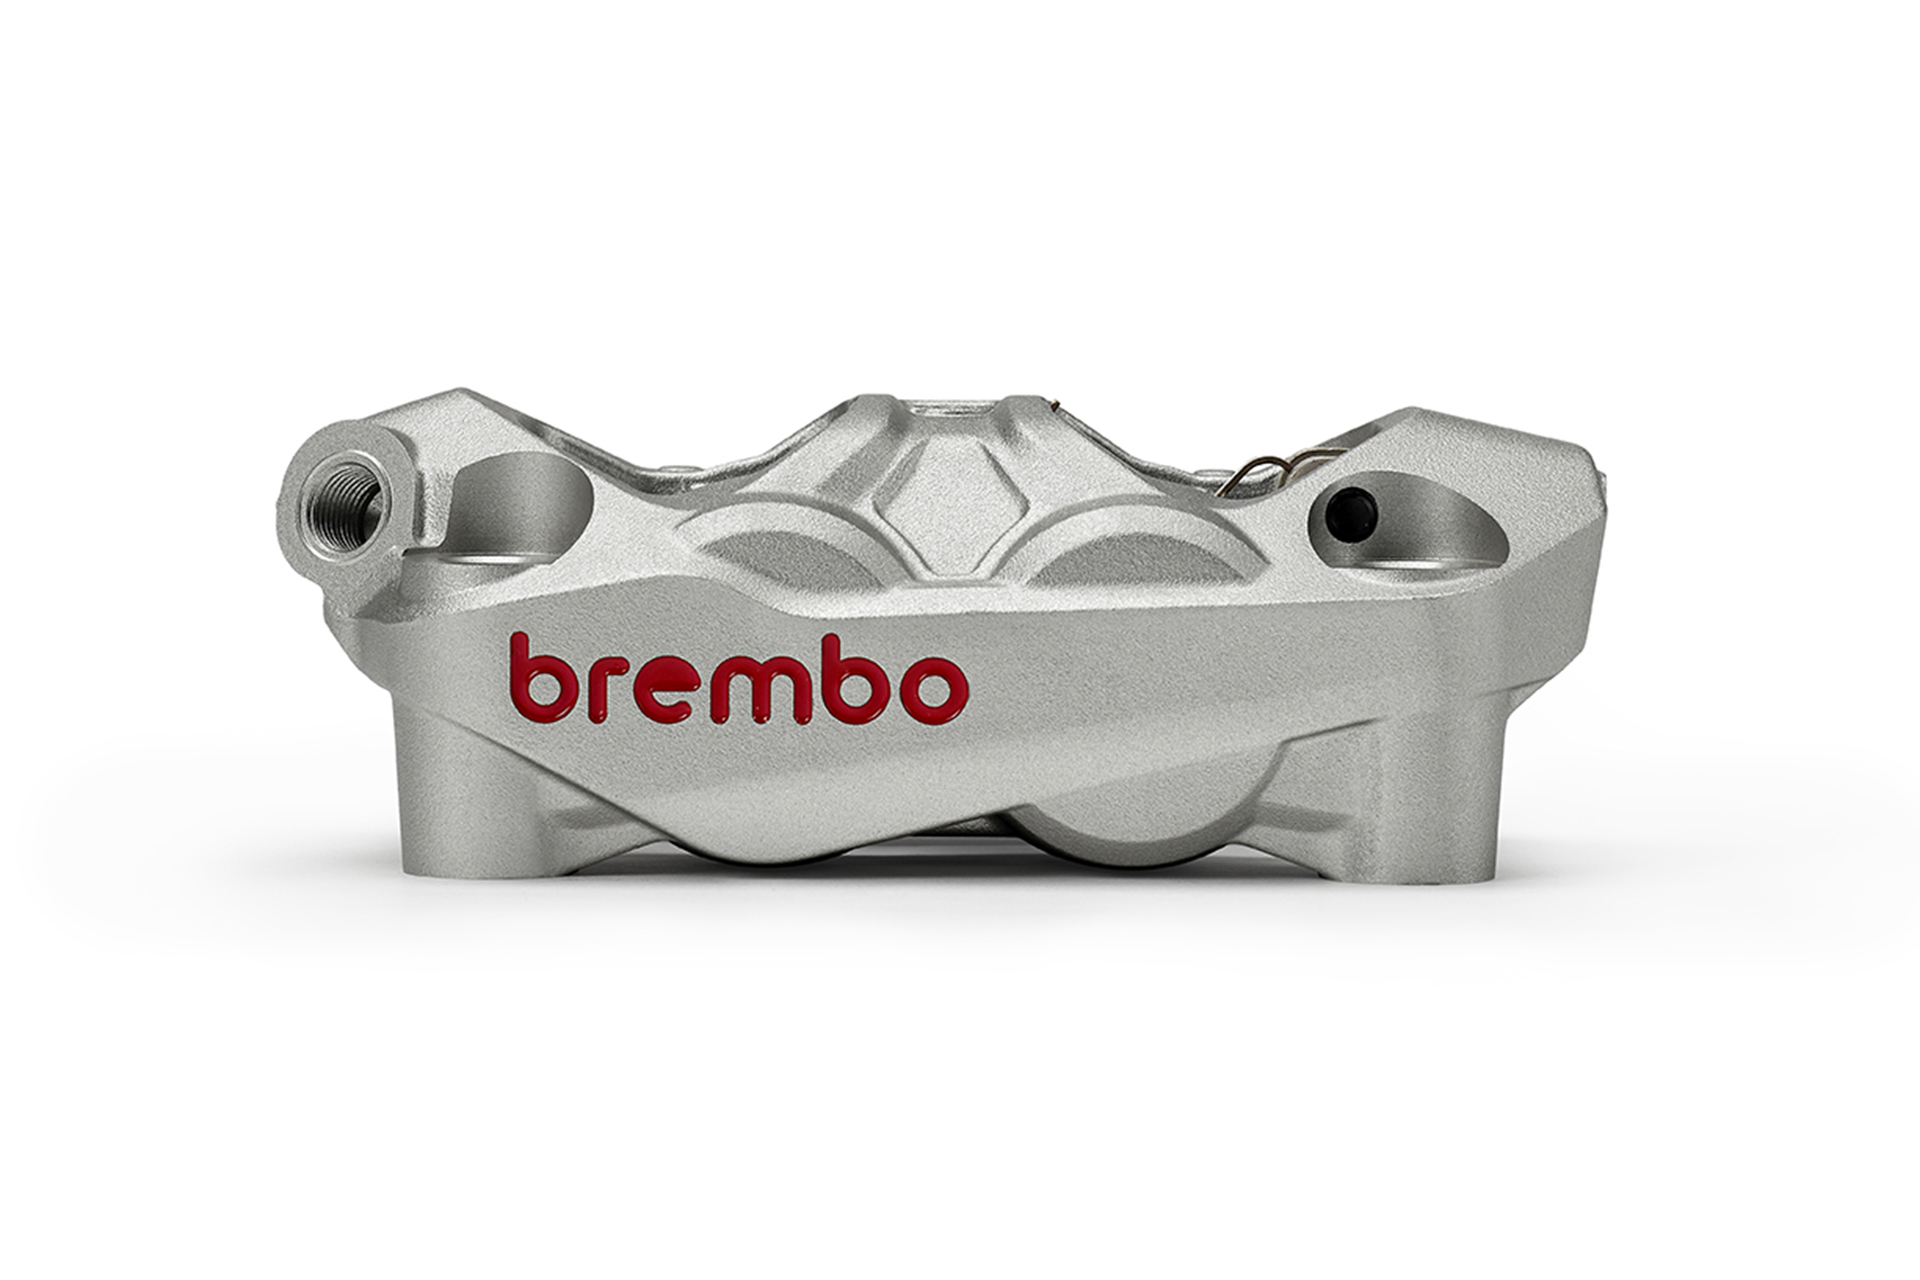 La Brembo Hypure está destinada a un uso en carretera